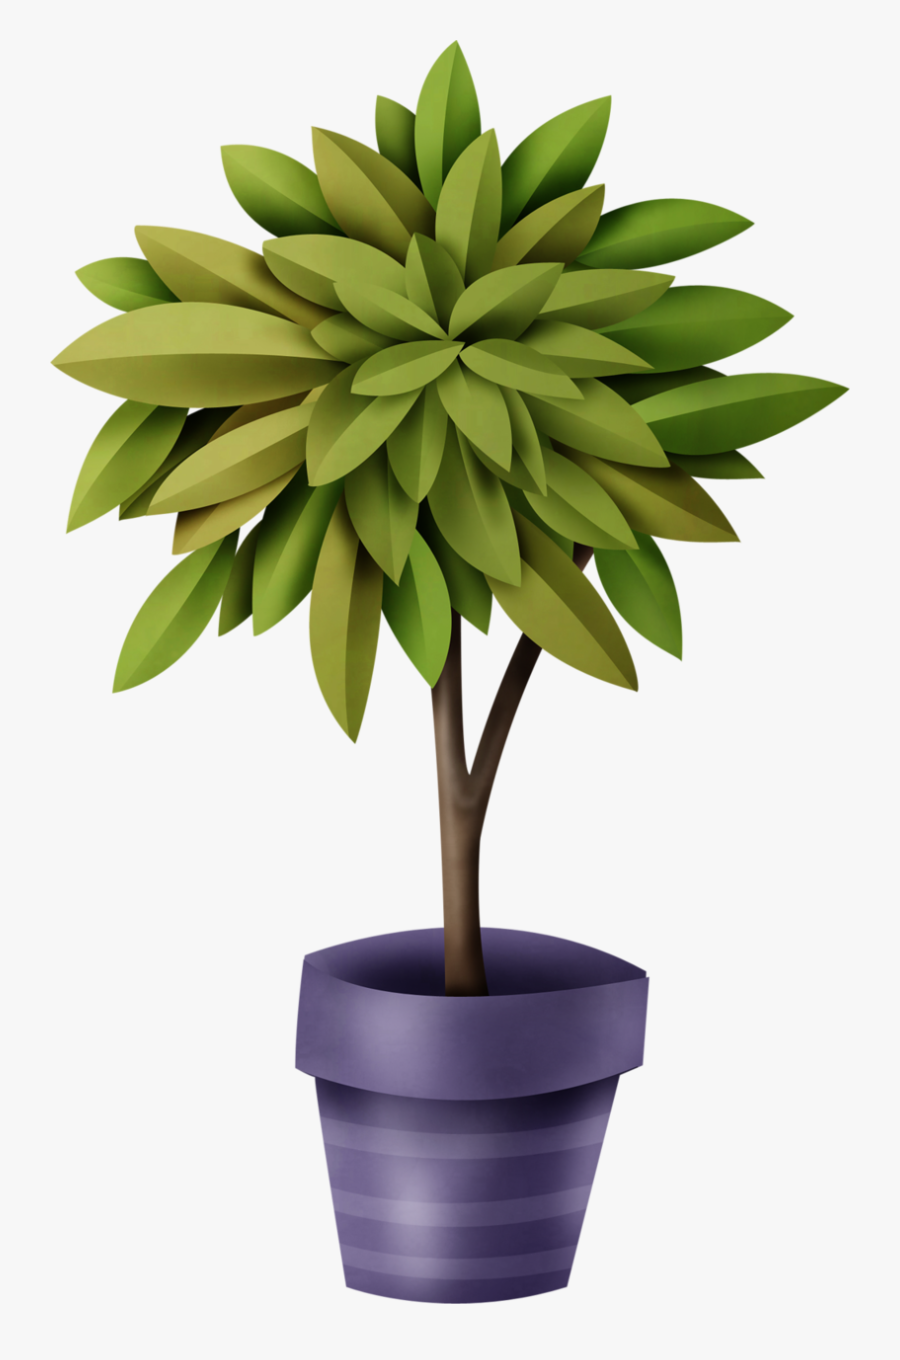 Pot Plant Png Clipart, Transparent Clipart